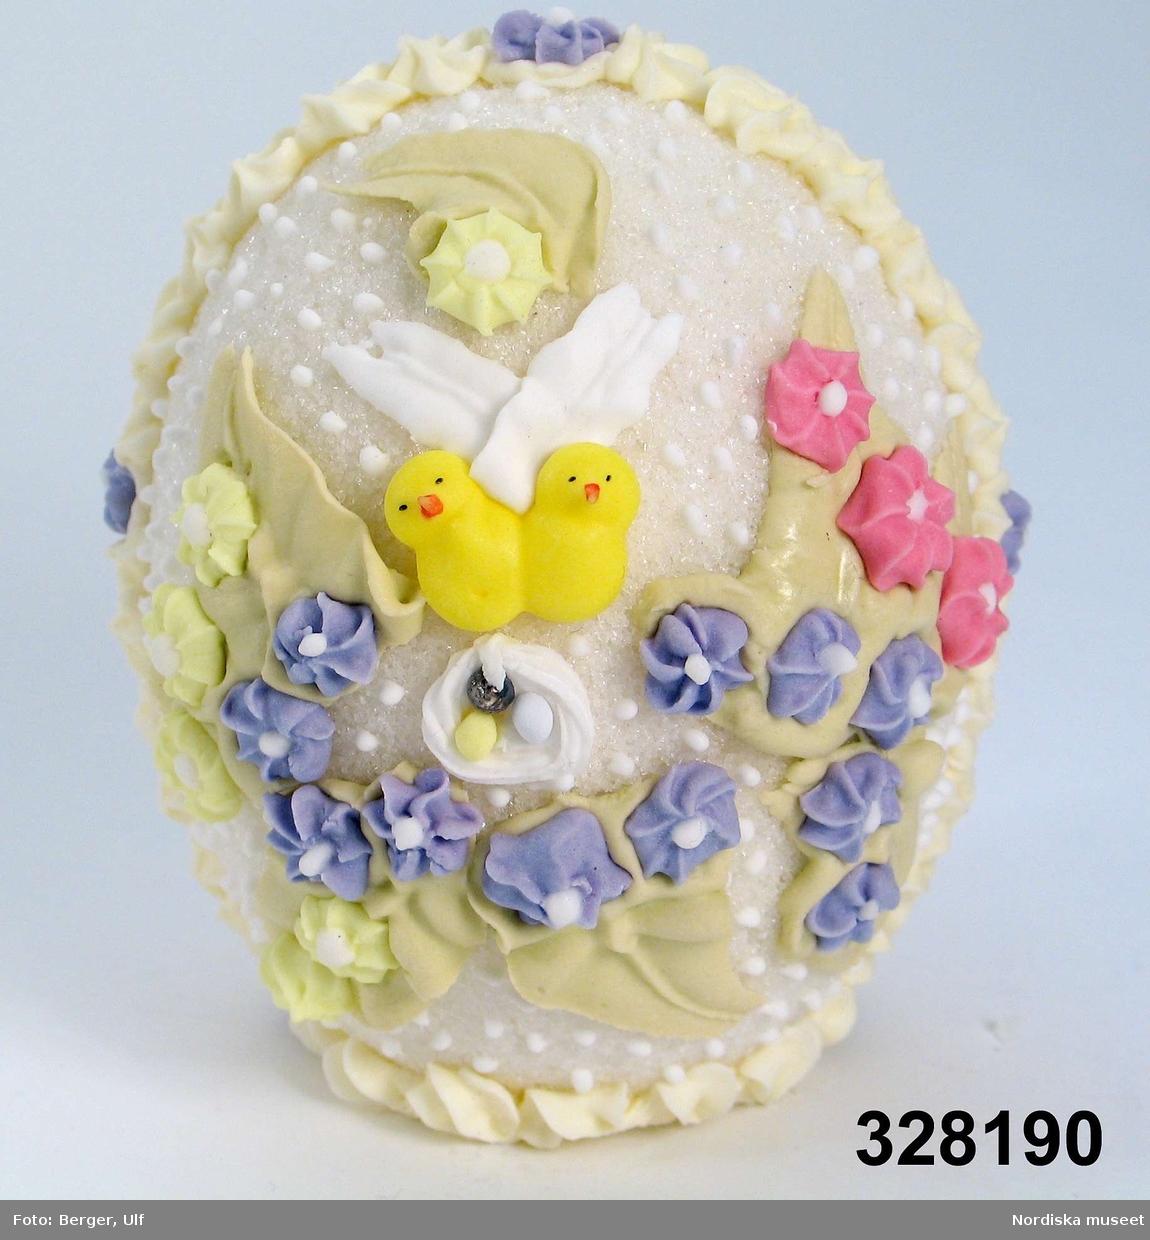 Tittägg i vit kristyr. Utsidan dekorerad med blå, gula och rosa blommor, två kycklingar och rede med ägg samt gröna blad. Genom titthålet  landskap med flicka i rosa klänning av papper (bokmärke) med docka, vit kanin och gul kyckling och rede med ägg samt blommor i blått, rosa och vitt.

Ägget är vid försäljning exponerat i en genomskinlig celluloidask med botten av papp i guldfärg. Ett gult sidenband med rosett är bundet runt asken. Asken ej förvärvad. 
Ägg tillverkade av Kerstin och Peter Hammarström (tillverkade hemma i deras kök) har enl uppgift av Karla frukt, Karlavägen varit ett mycket populärt kristyrägg. 1996 visades tillverkning av kristyrägg på Nordiska museet och kristyrägg såldes i butiken. 
/2005-03-08 Elisabeth Brundin